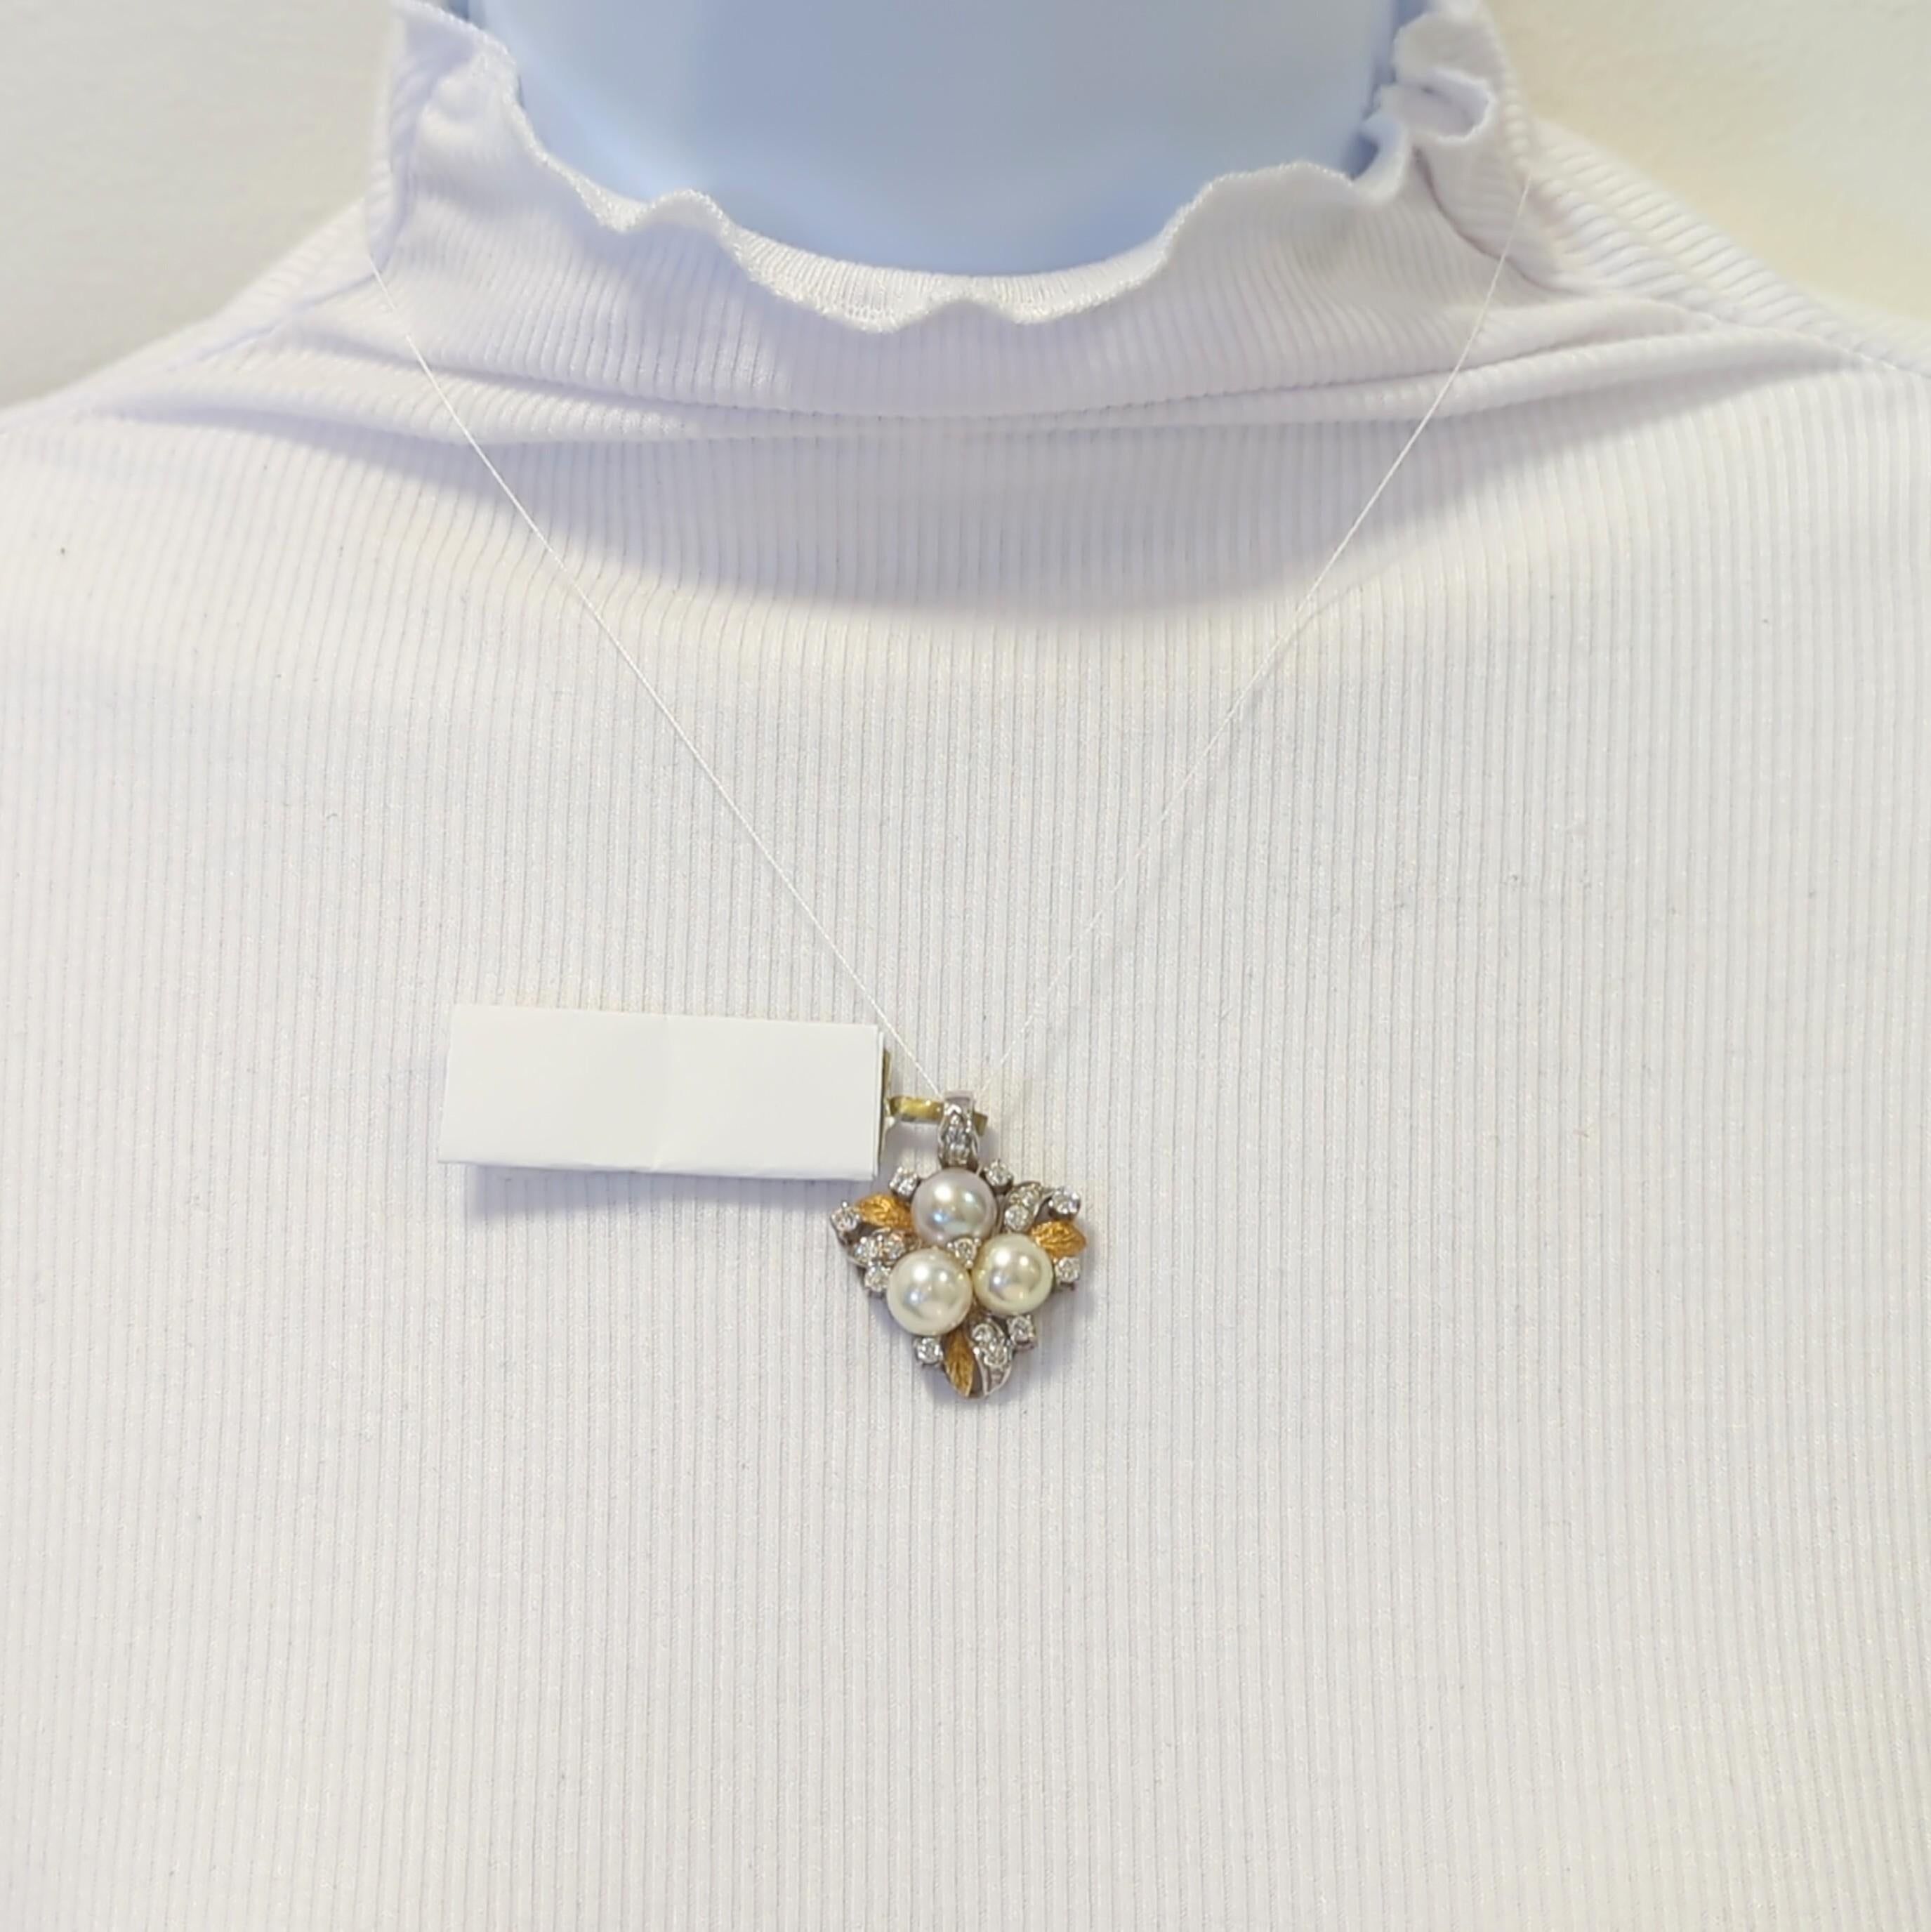 Schöner Anhänger mit 3 weißen runden Perlen und weißen runden Diamanten von guter Qualität.  Handgefertigt aus 18 Karat Weiß- und Gelbgold.  Eine Kette kann gegen Aufpreis zur Verfügung gestellt werden.